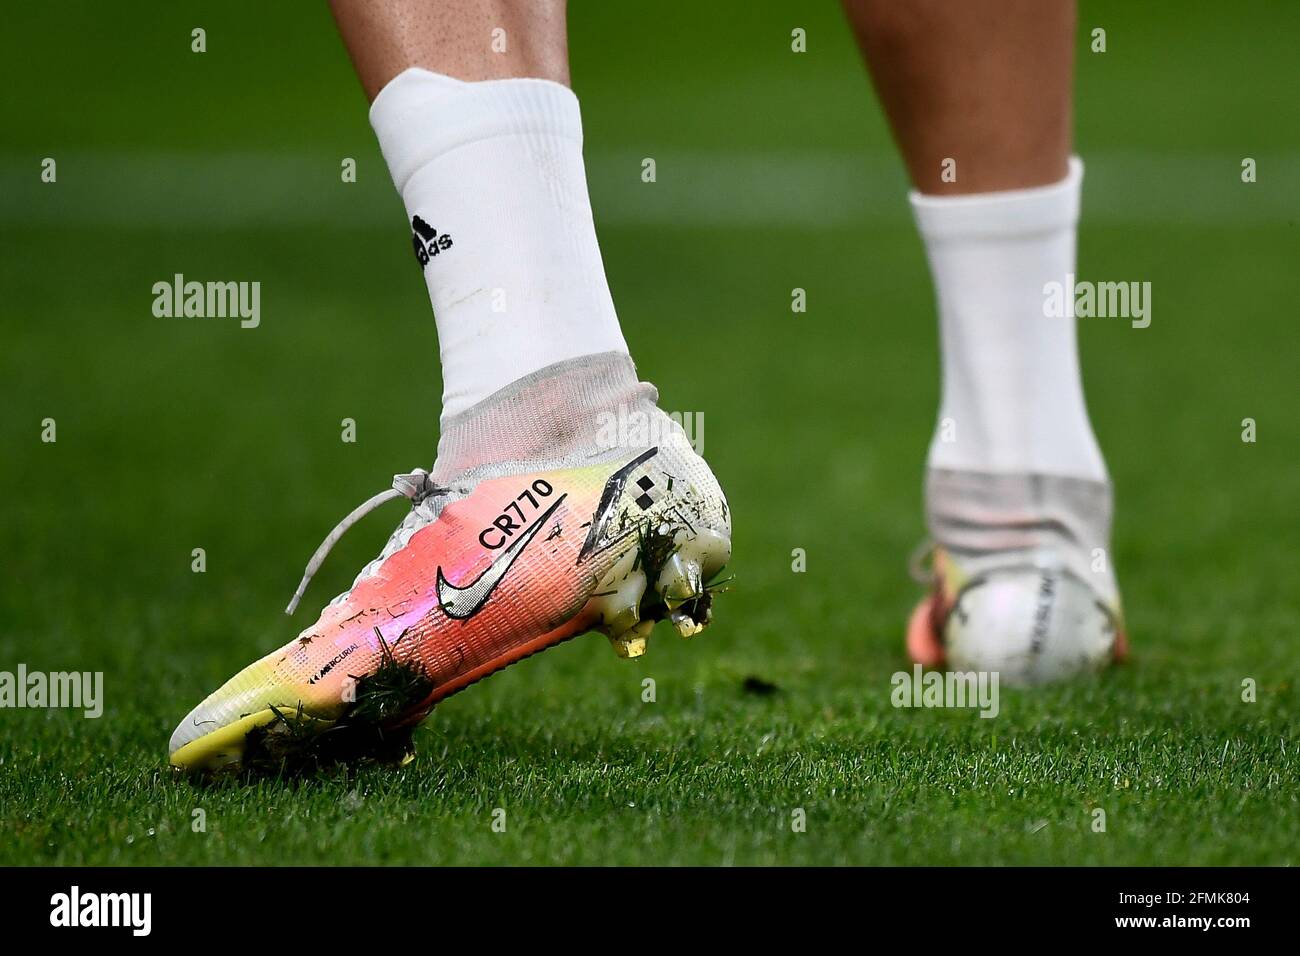 Torino, Italia. 09 maggio 2021. Le scarpe Nike Mercurial personalizzate con  la scritta "CR770" di Cristiano Ronaldo del Juventus FC vengono viste  durante il warm up prima della partita di calcio della